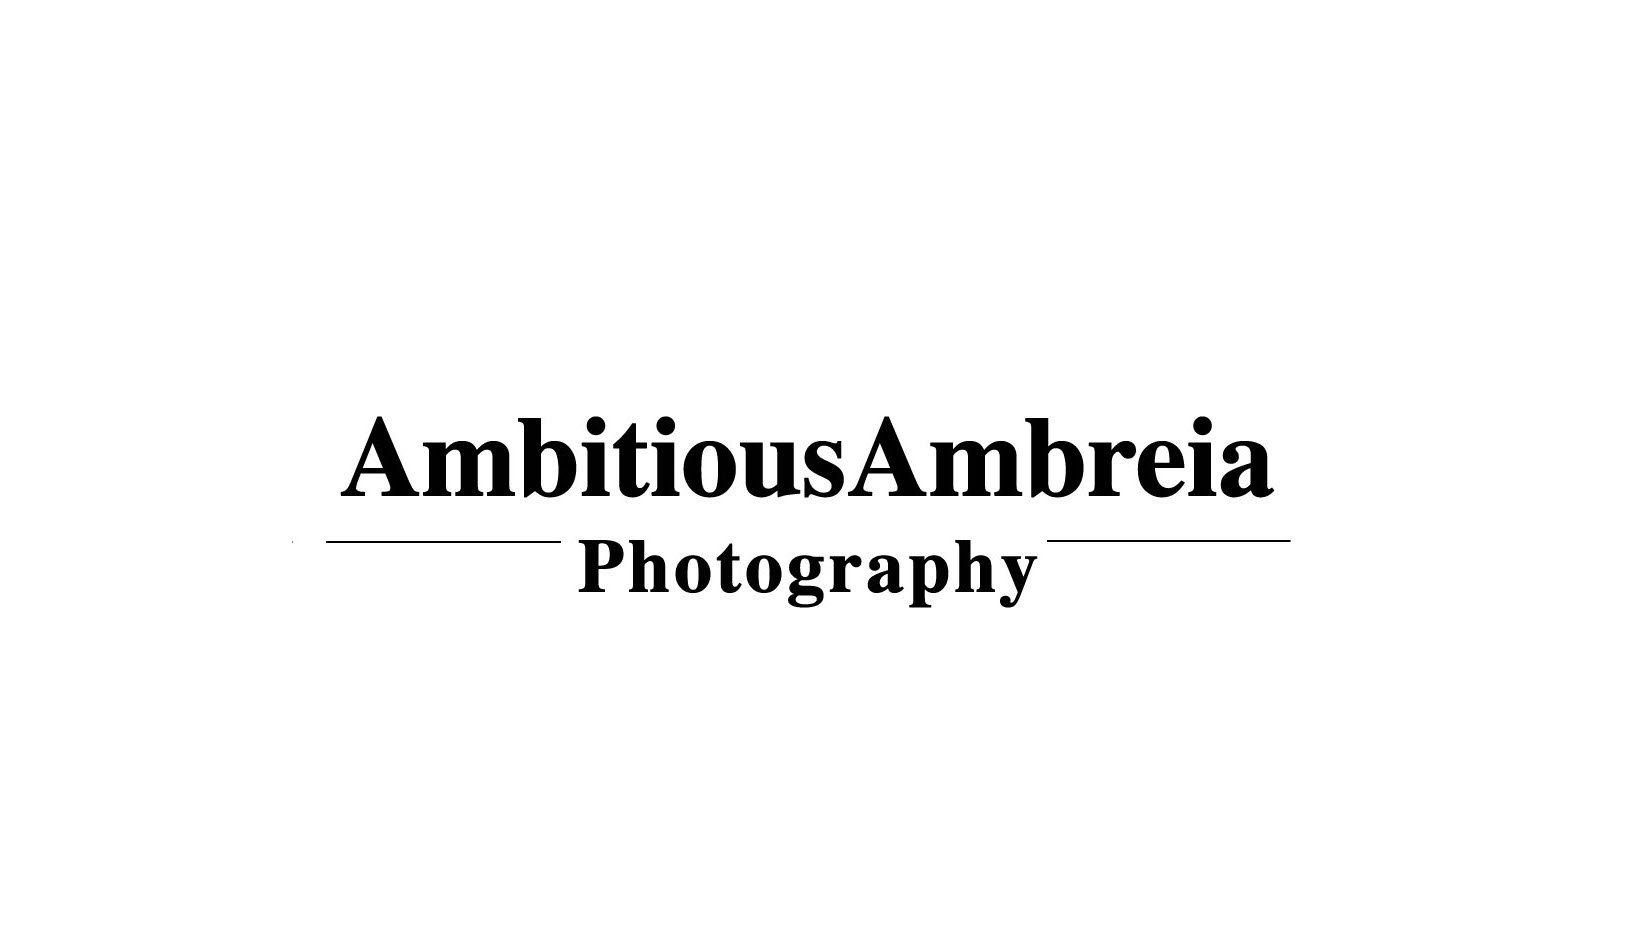 AmbitiousAmbreiaPhotographyLogo.jpg